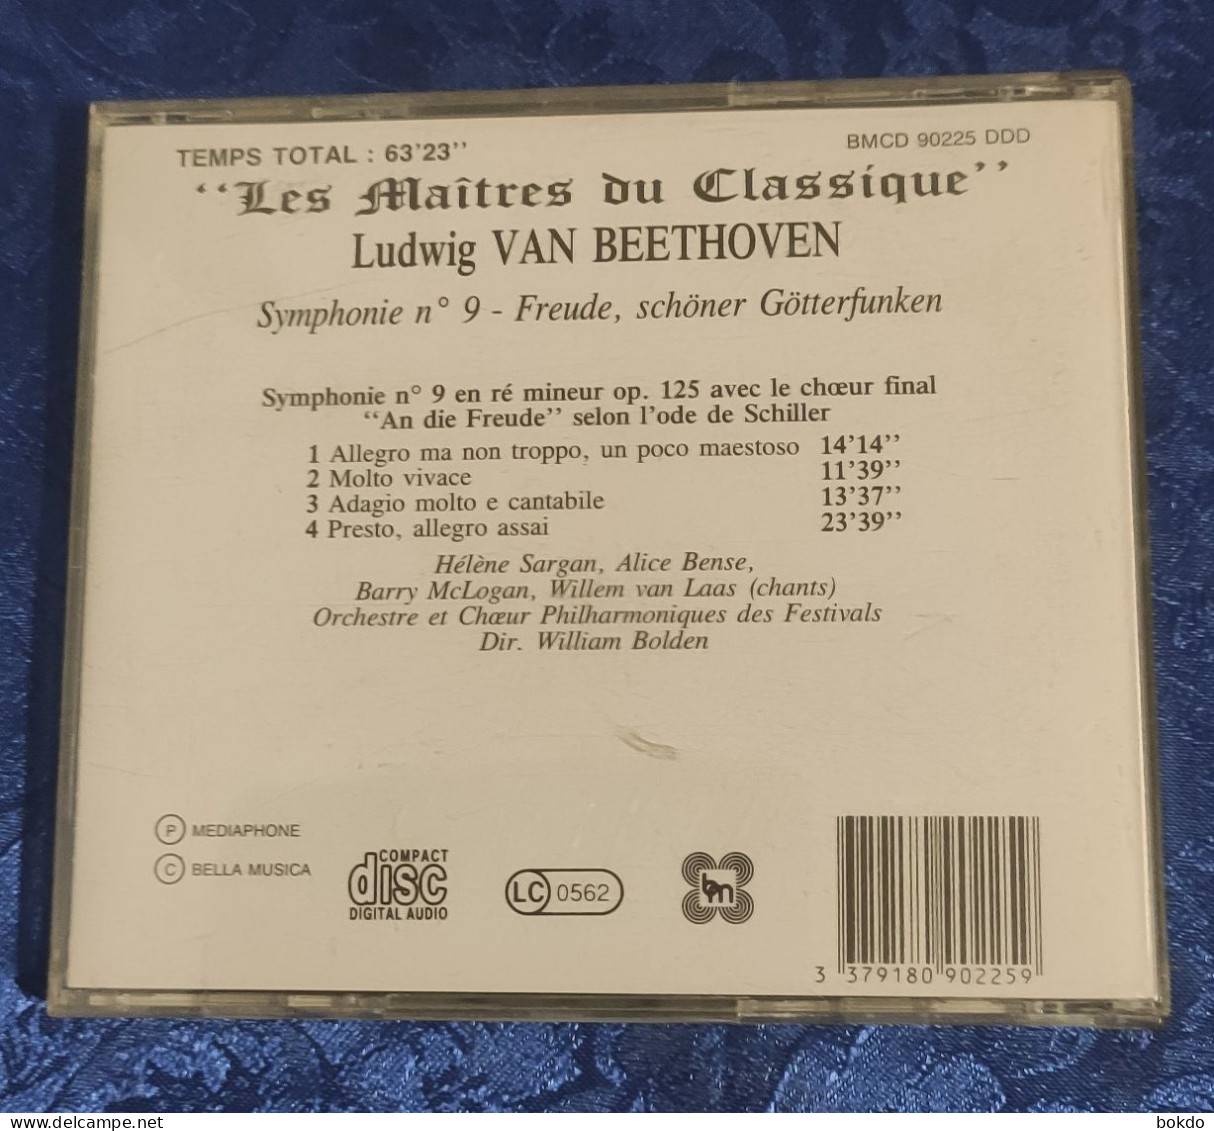 Ludwig Van Beethoven - Symphonie N° 9 - Klassiekers